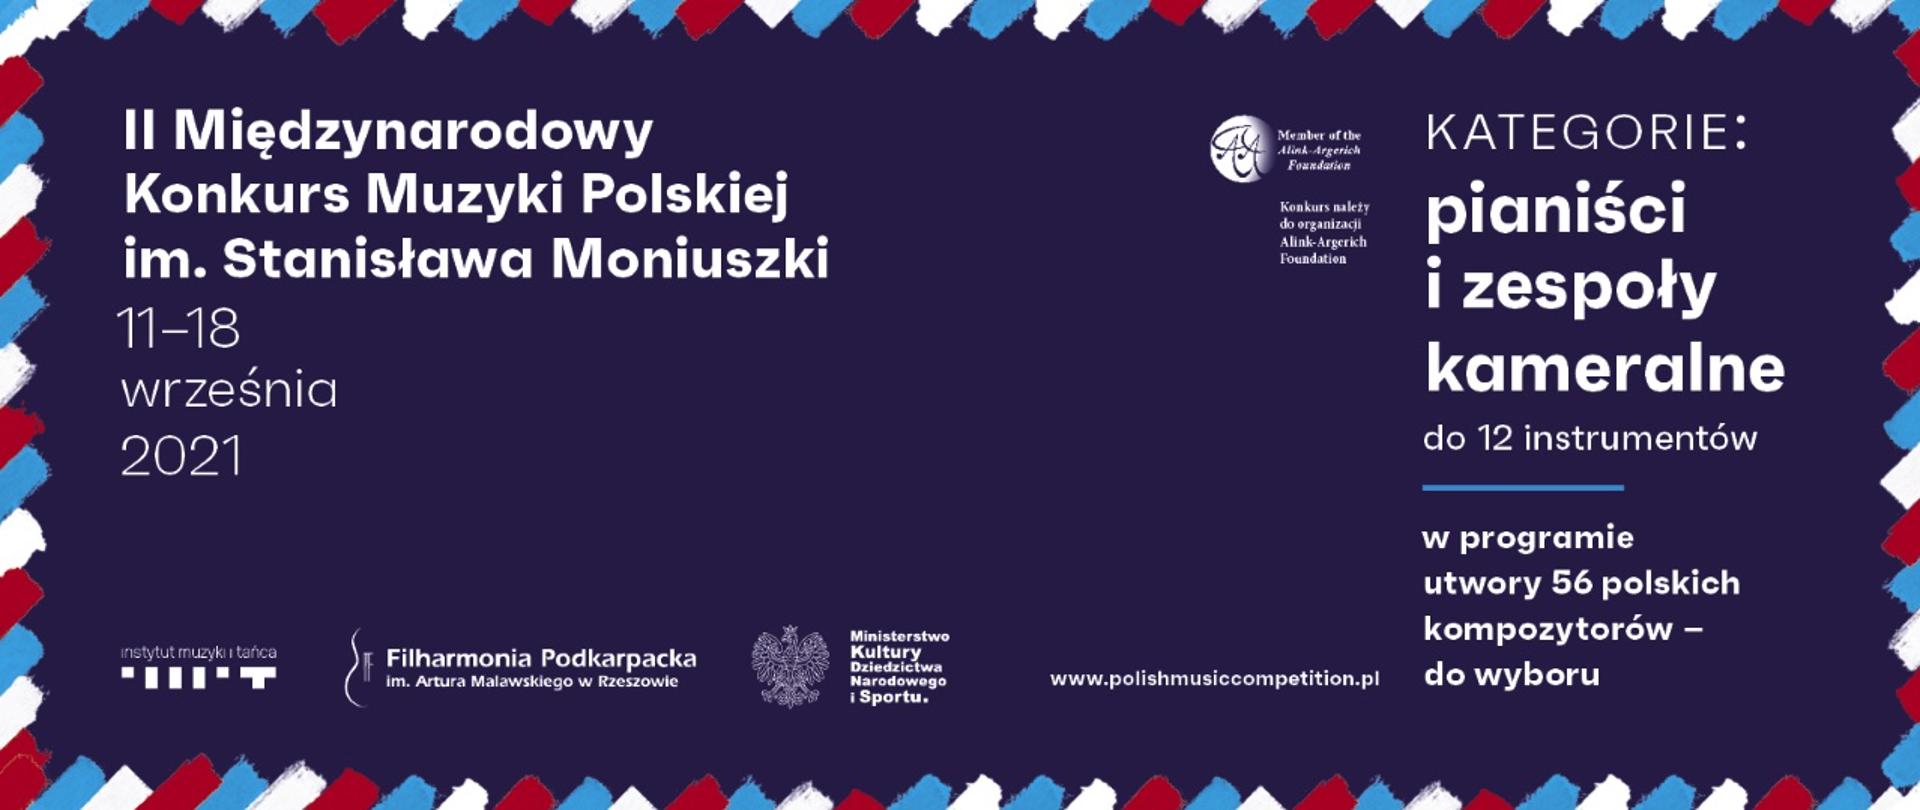 Międzynarodowy Konkurs Muzyki Polskiej im. Stanisława Moniuszki